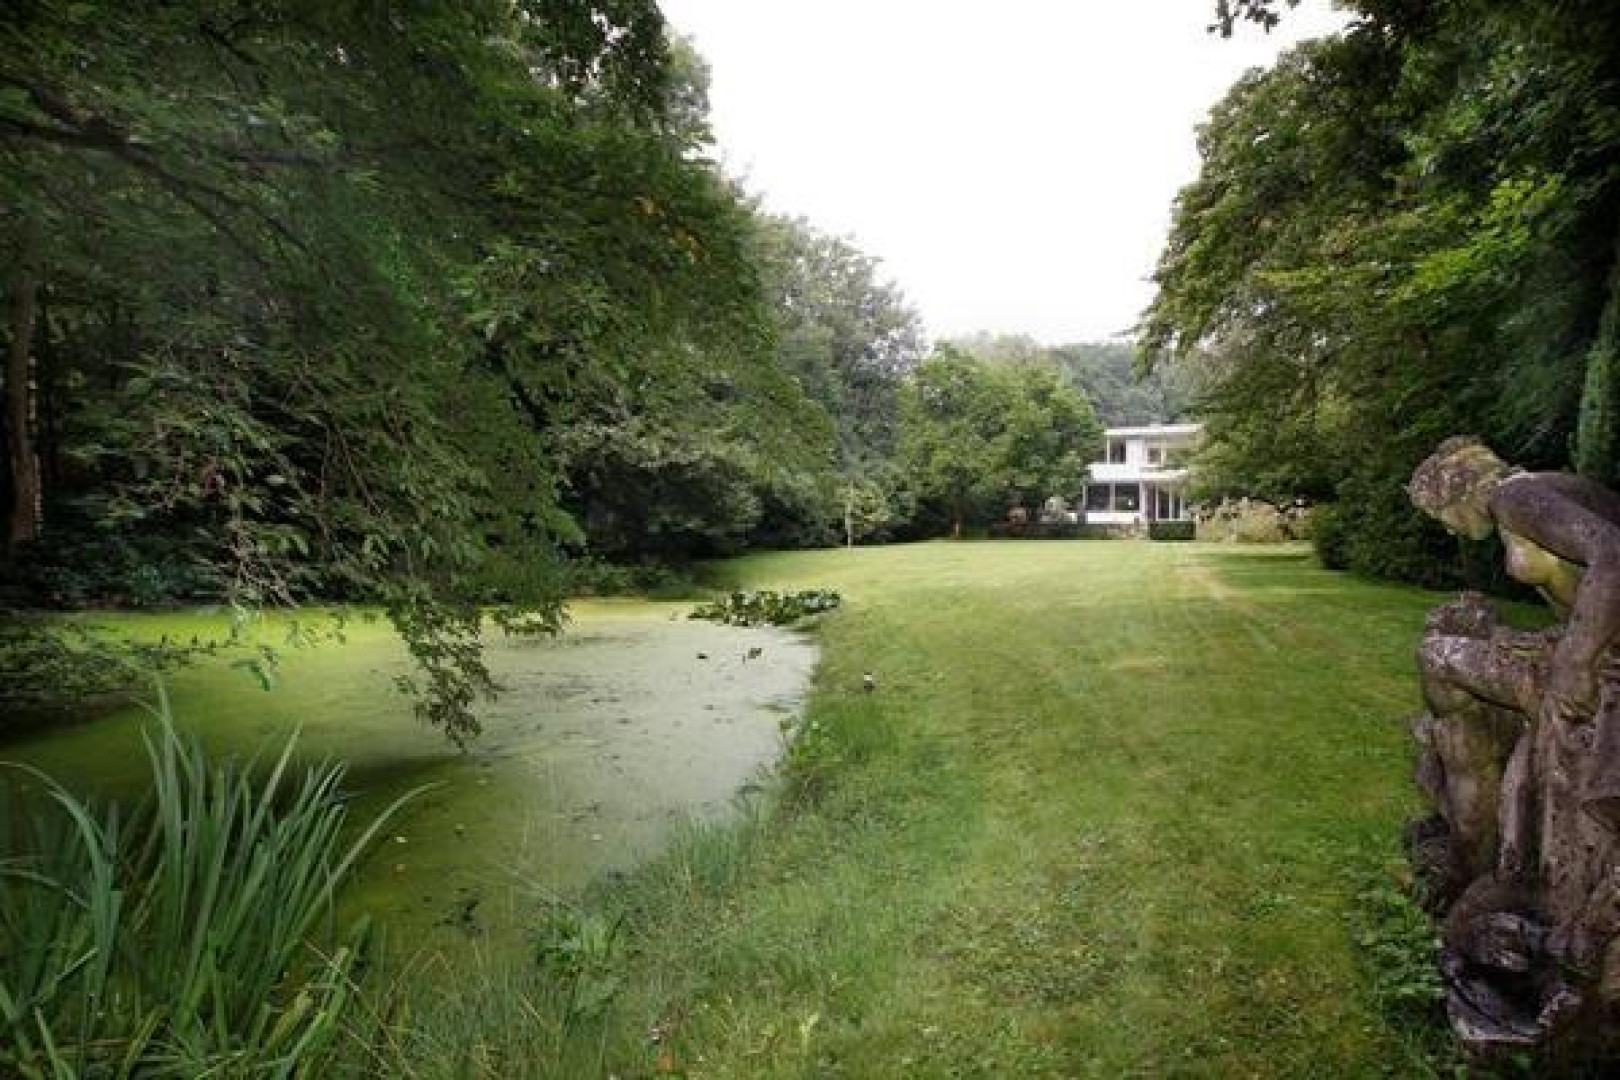 Wassenaarse villa van Neelie Smit Kroes eindelijk na jaren verkocht. Zie foto's